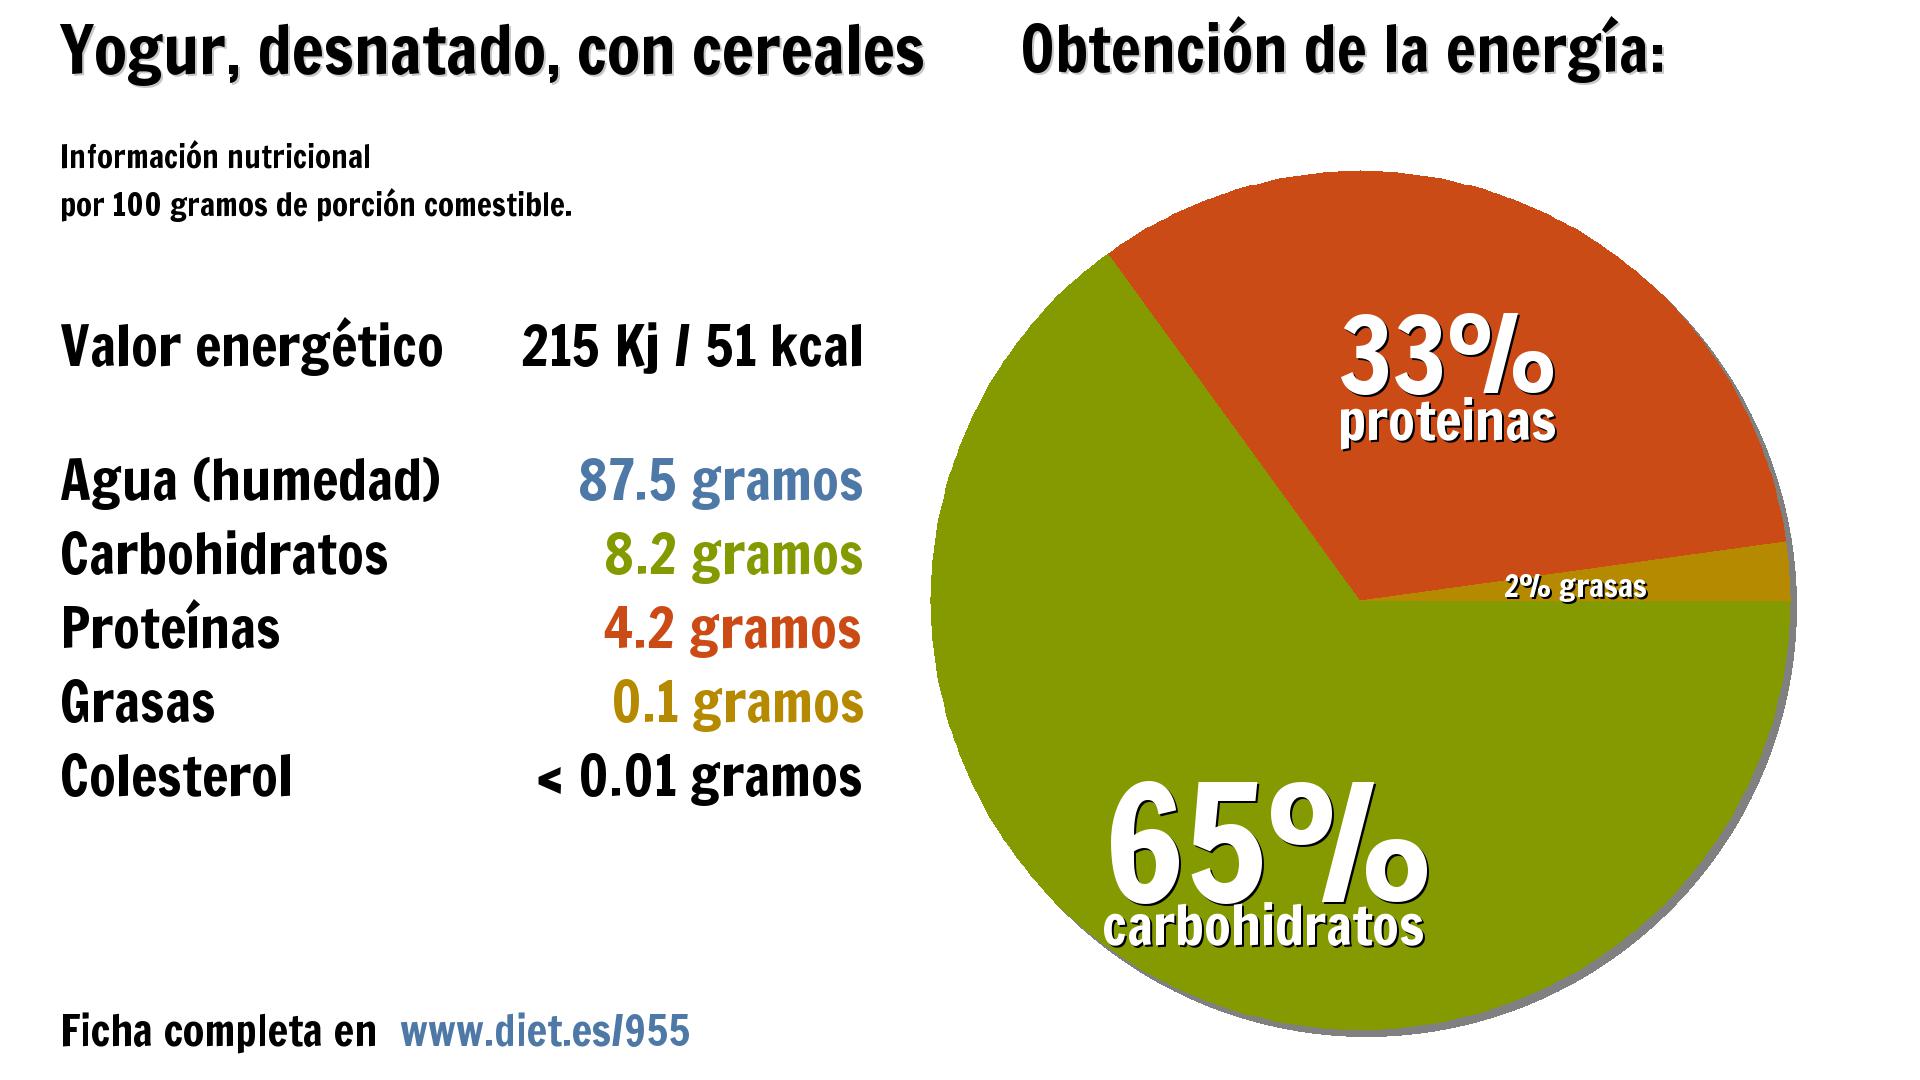 Yogur, desnatado, con cereales: energía 215 Kj, agua 88 g., carbohidratos 8 g. y proteínas 4 g.